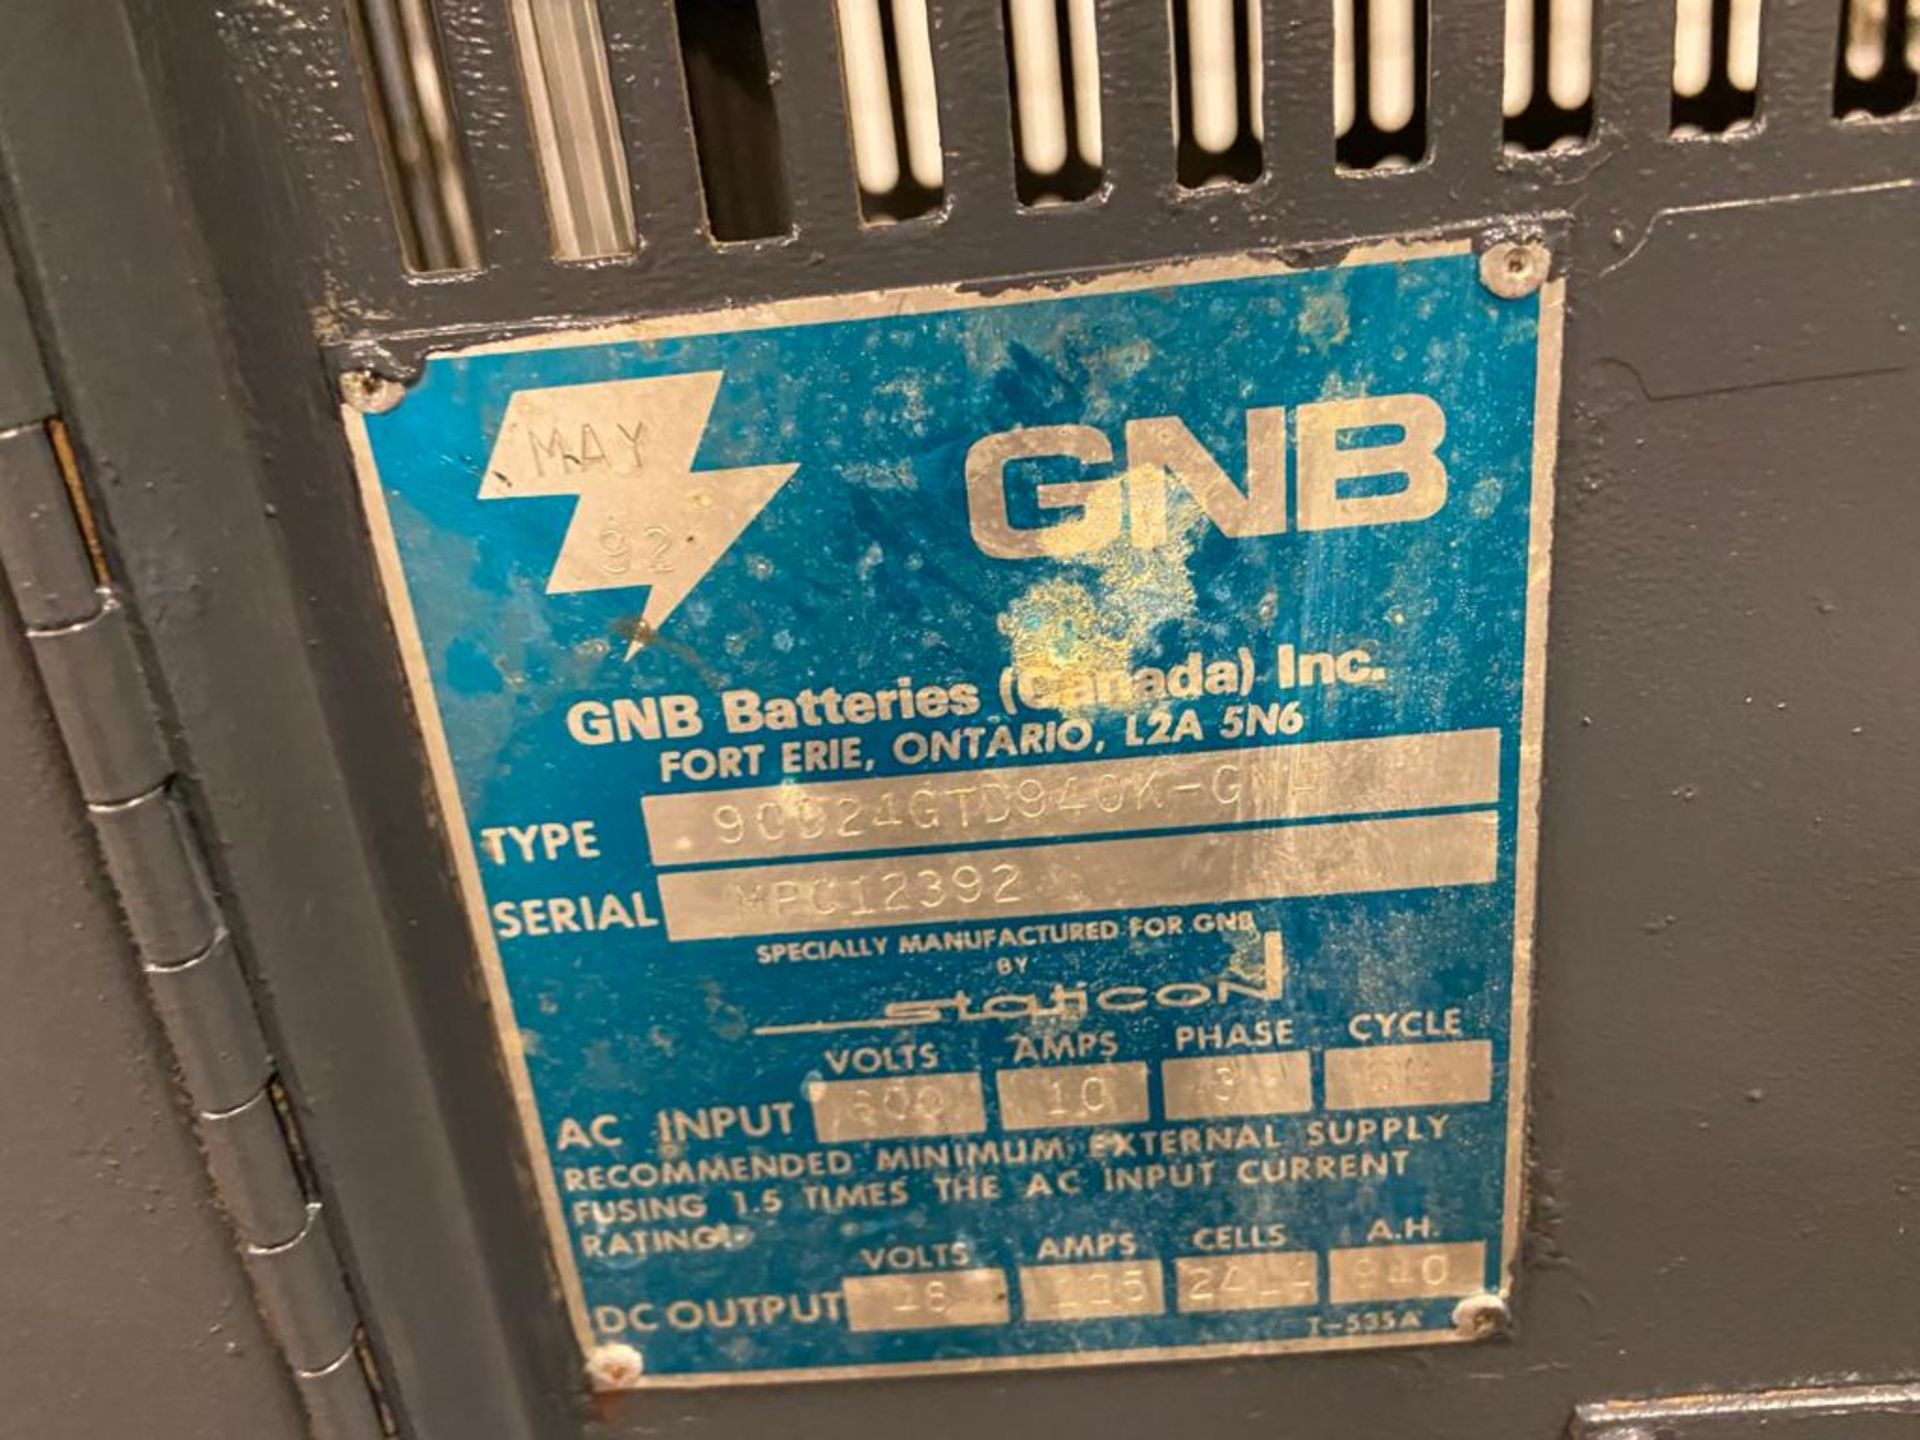 GNB Forklift Battery Charger 48V - 3 phase input - Image 2 of 2